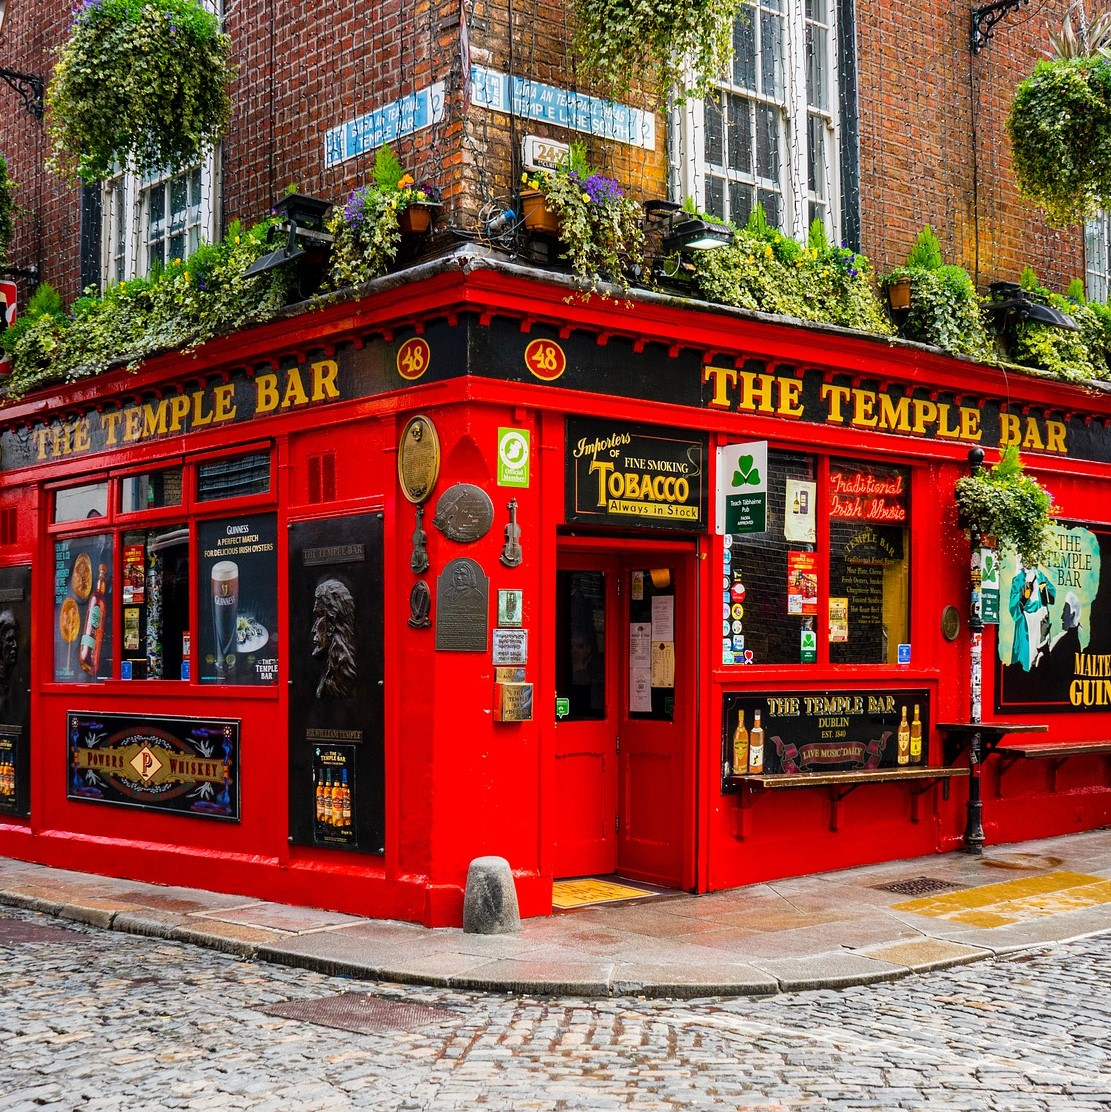 Voetbalstad Dublin is meer dan alleen voetbal, op de afbeelding is The Temple Bar te vinden uit het Temple Bar District. Door op afbeelding te klikken kom je meer te weten over de voetbalstad Dublin.